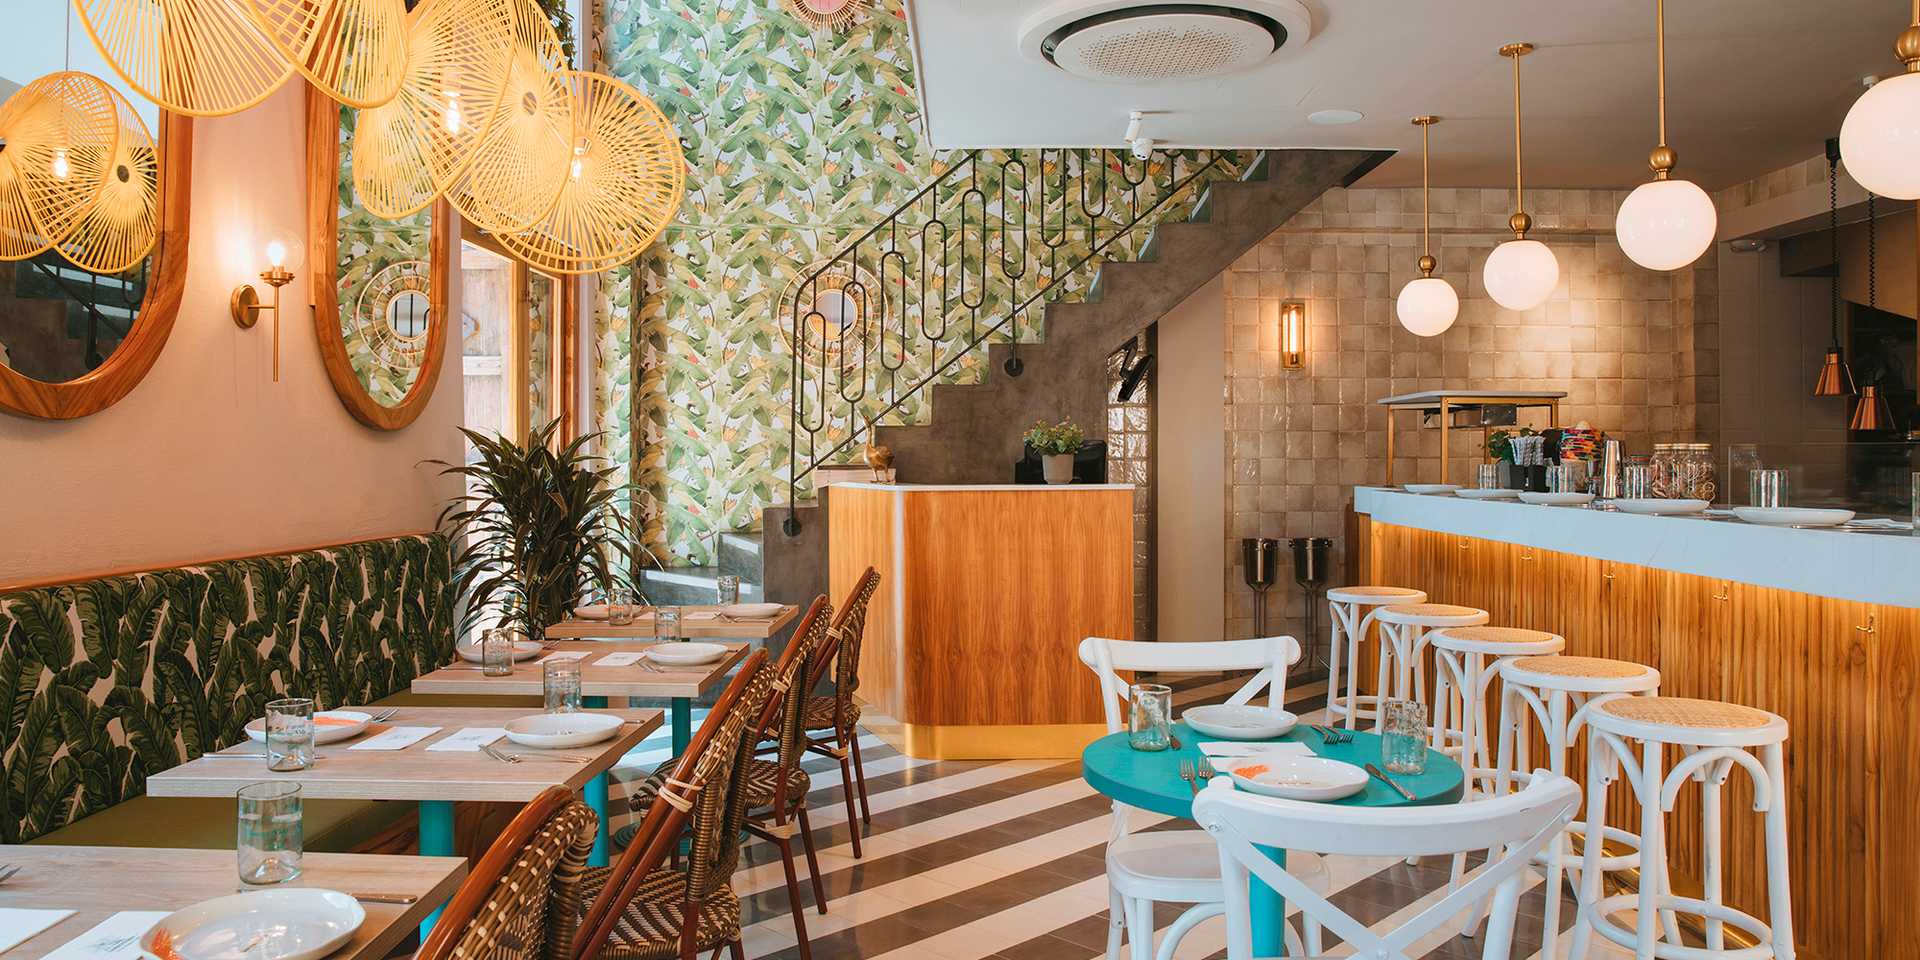 Restaurant rénové par un architecte spécialiste de l'architecture commerciale dans le Gard (30)